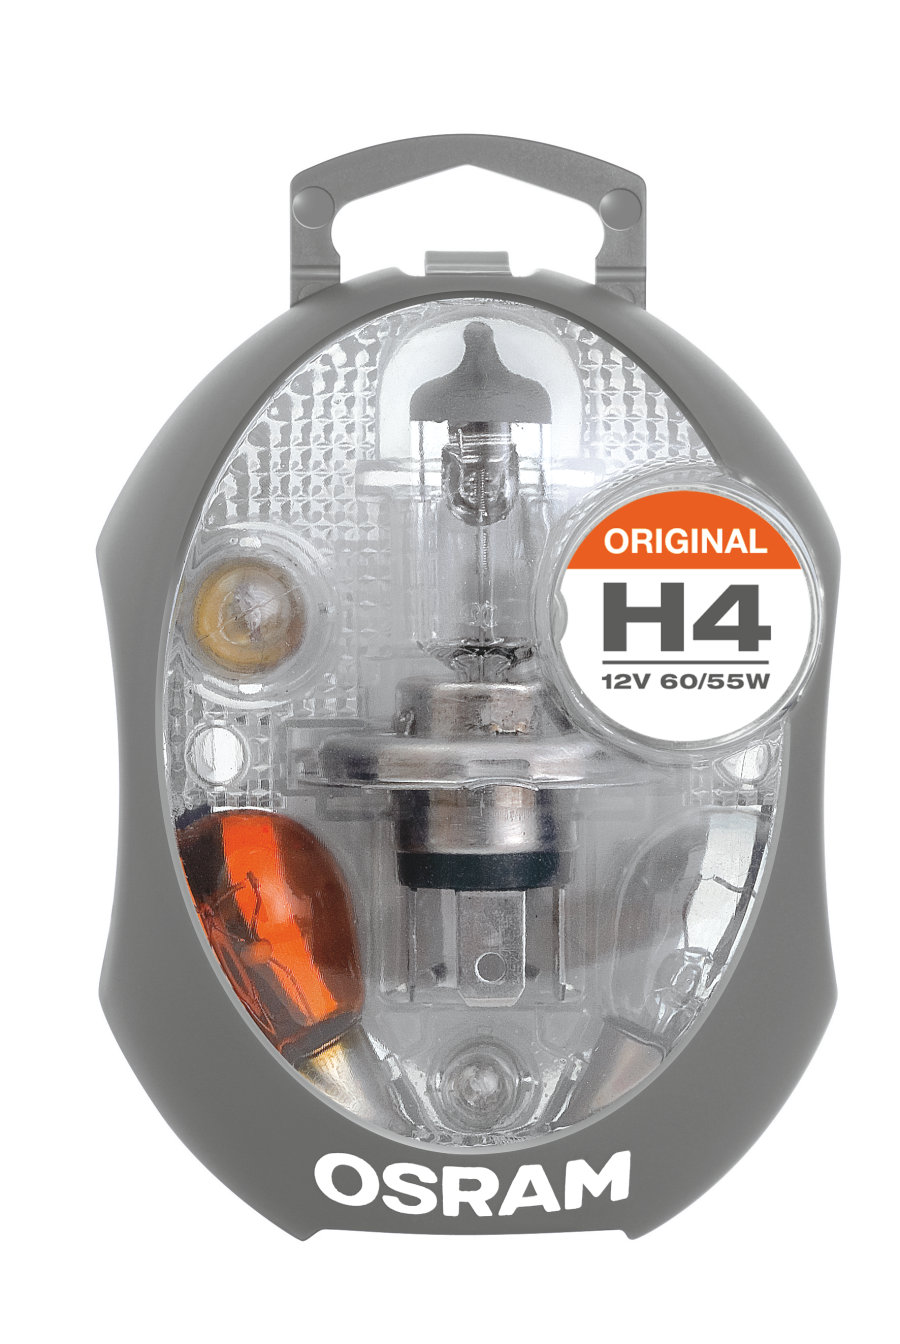 Osram H4 12V reservelampenset